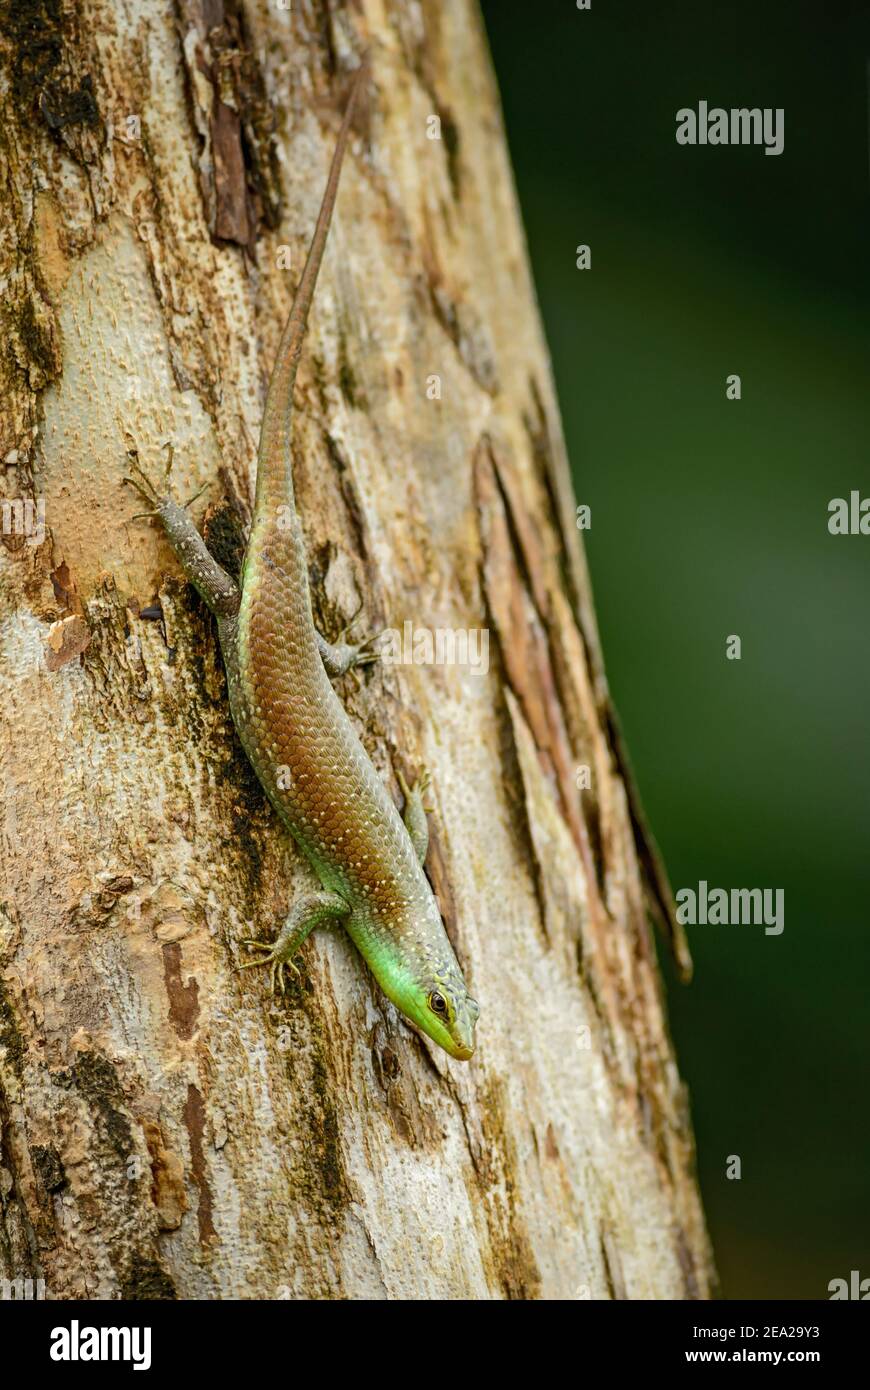 Scinque d'olivier – Dasiolivacea, lézard timide des forêts et des terres boisées du sud de l'Asie, Thaïlande. Banque D'Images